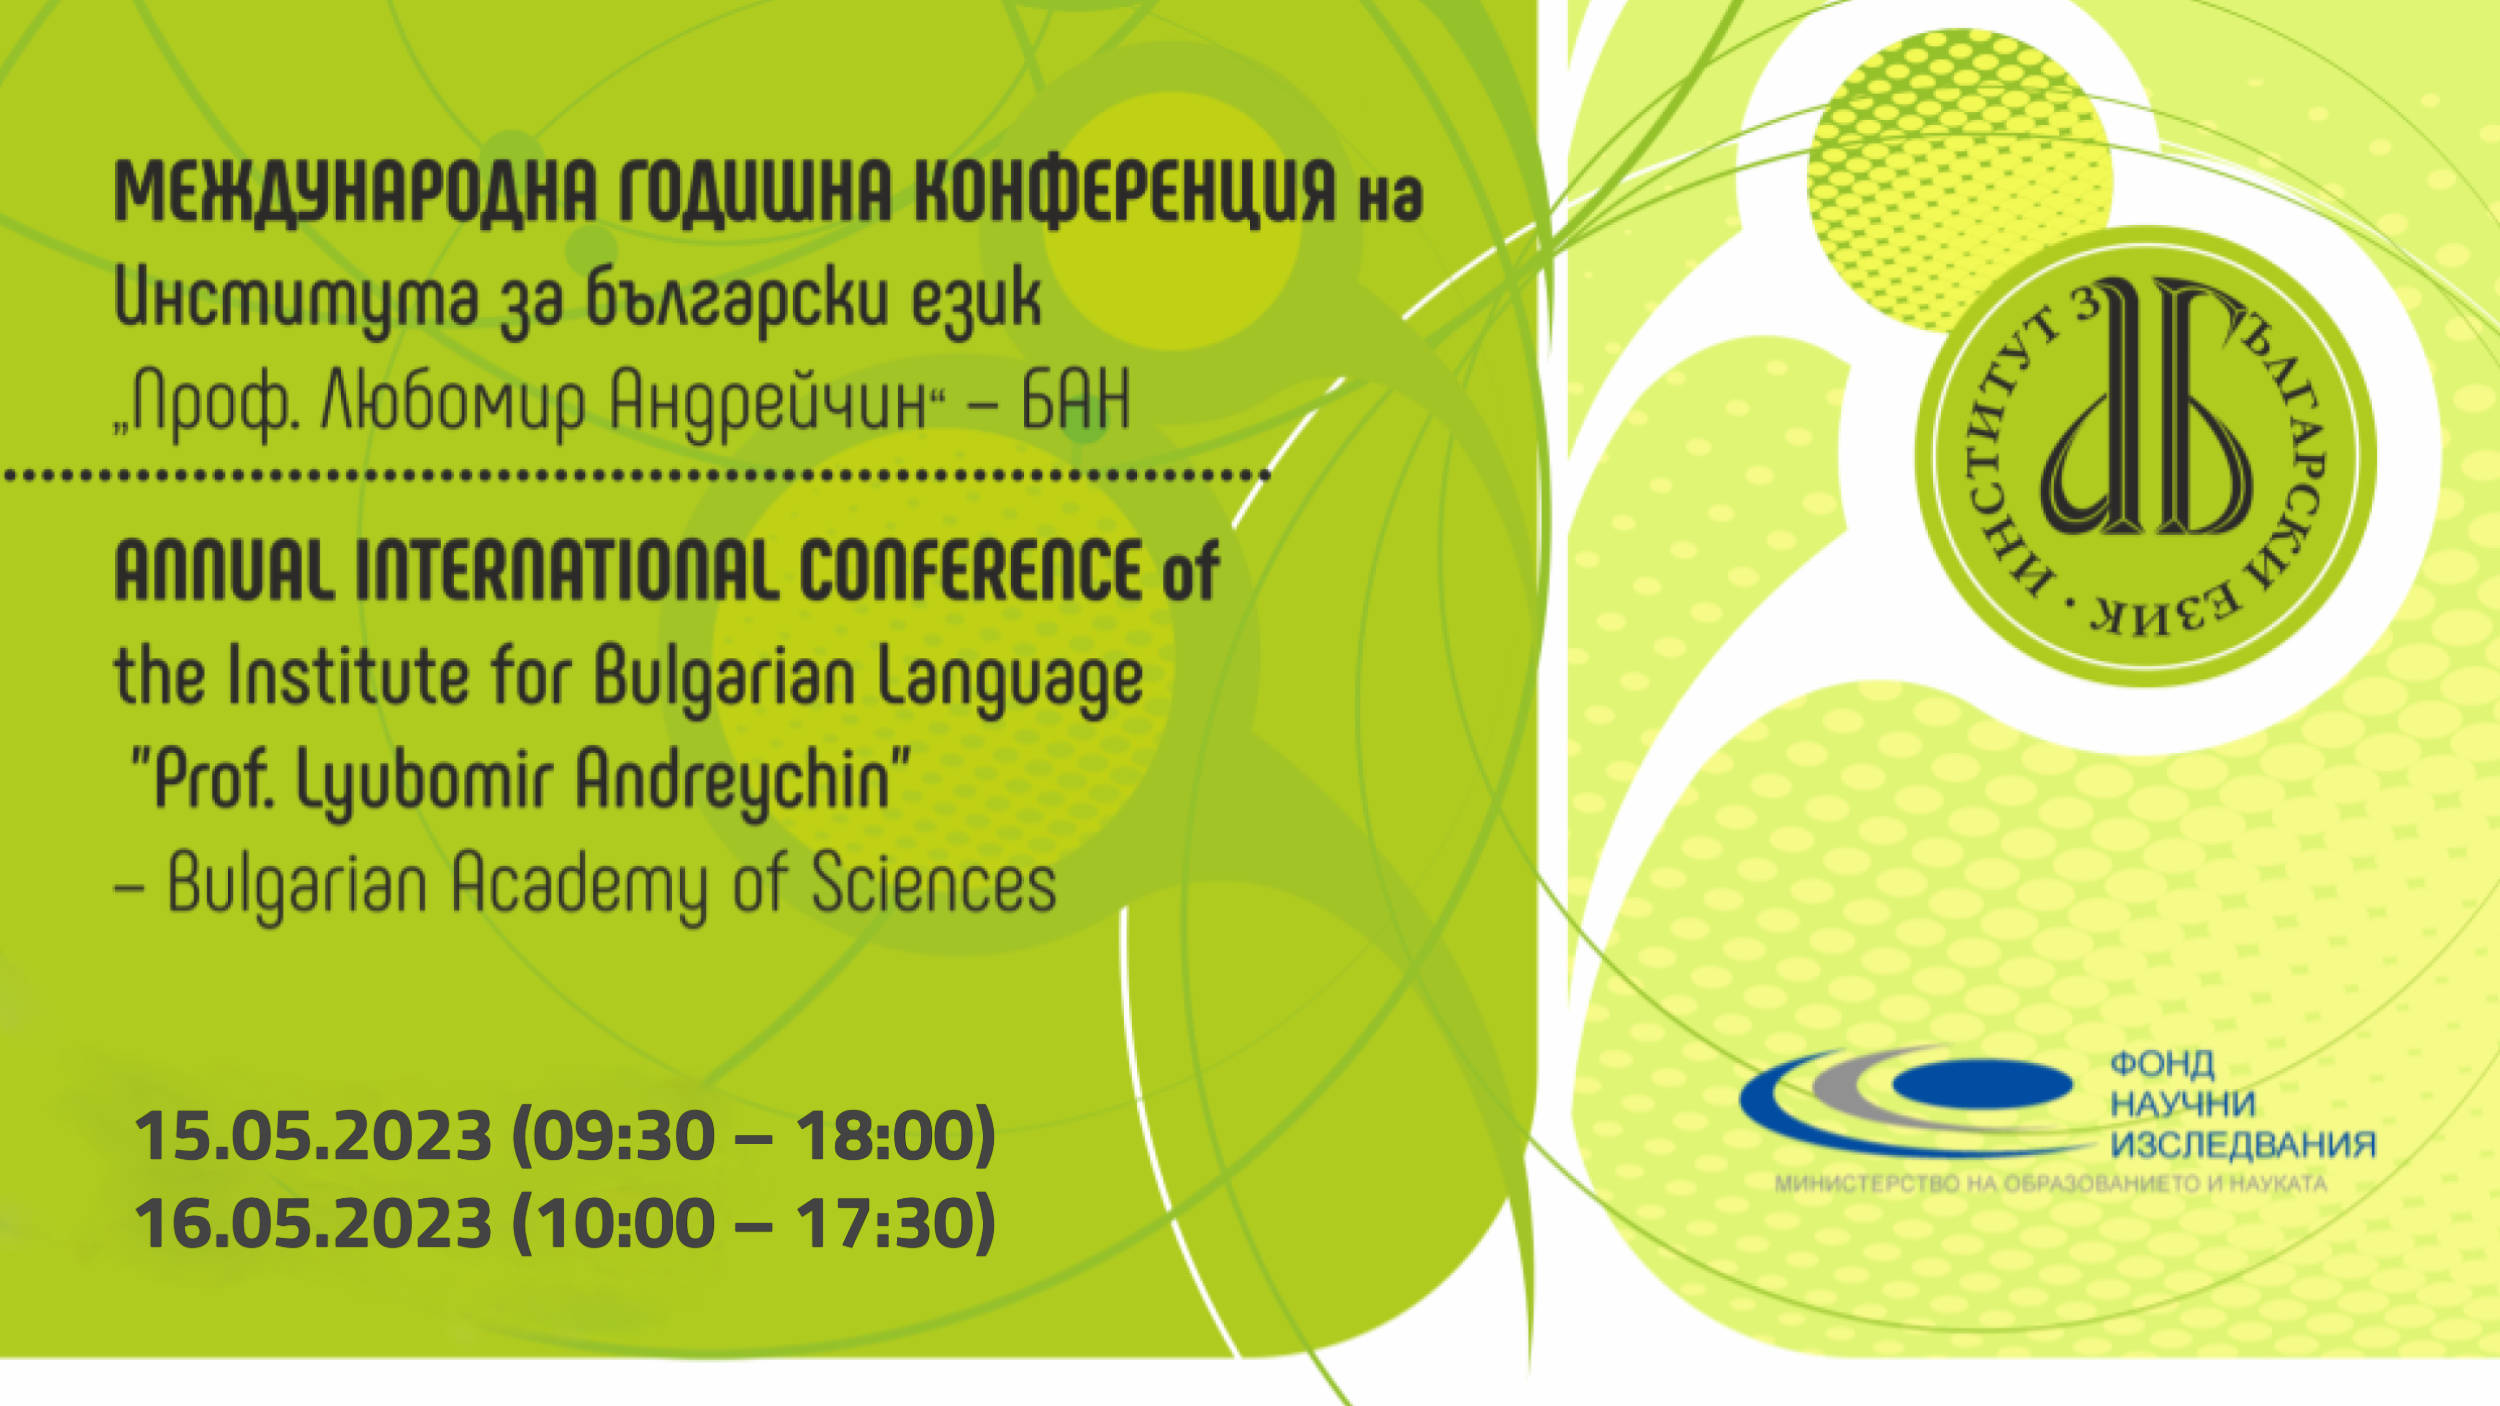 Международна годишна конференция на Института за български език – 2023 г.